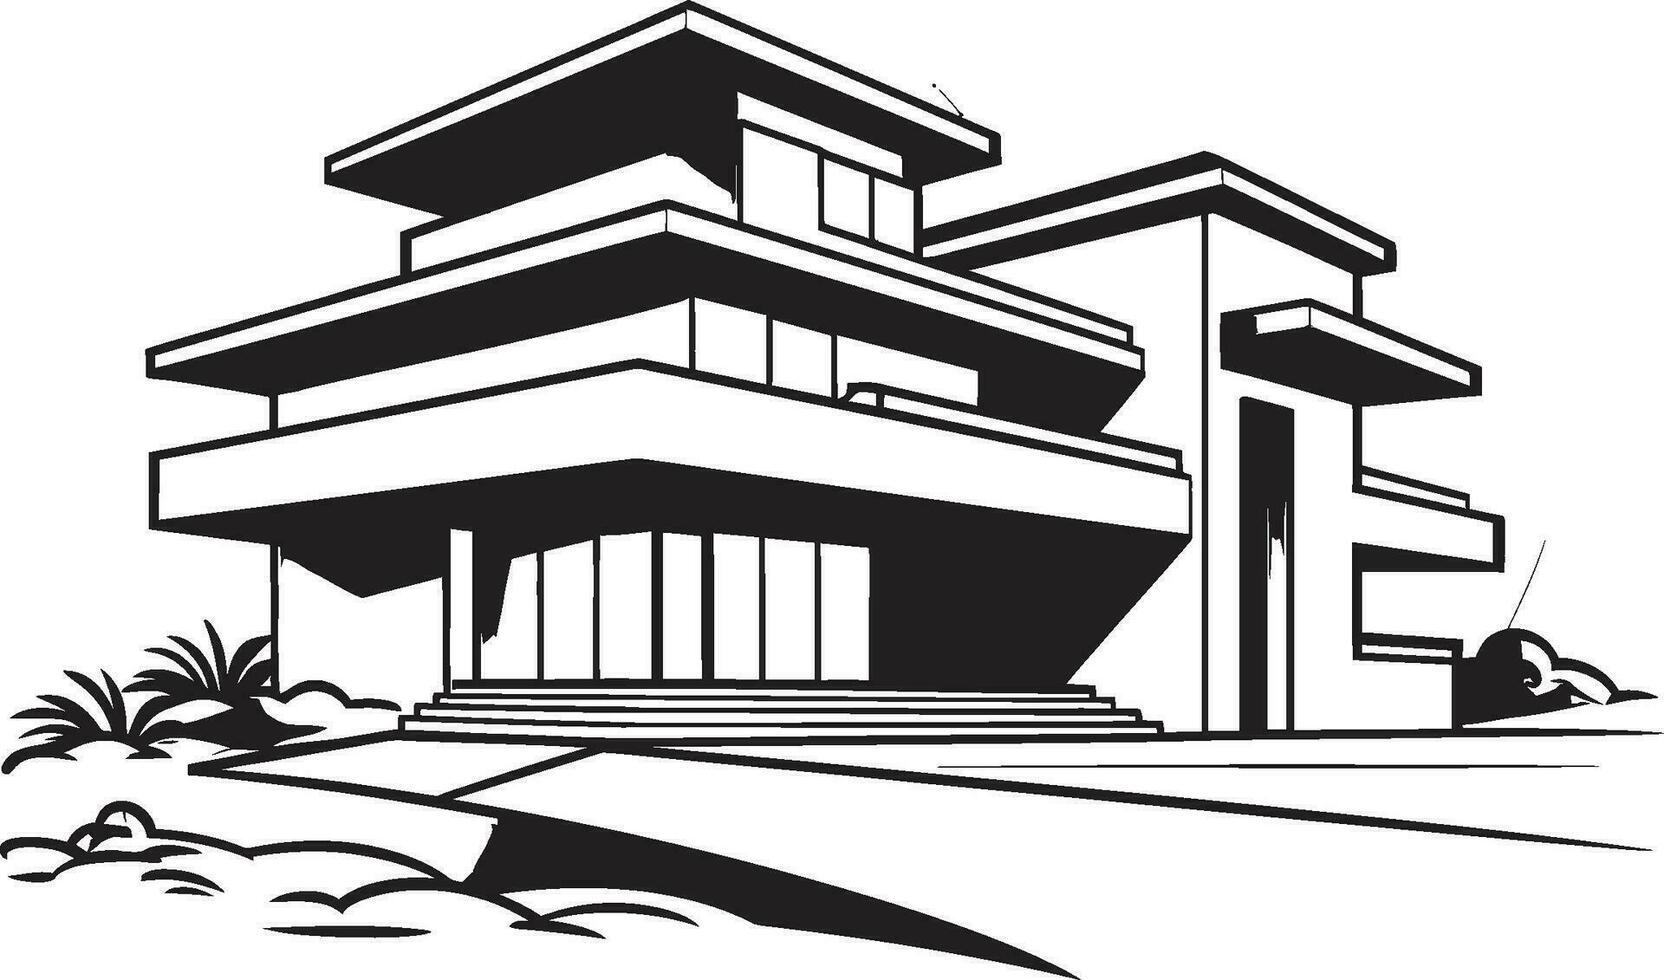 robusto residencia marca negrita casa diseño vector emblema robusto hogar bosquejo grueso casa icono diseño